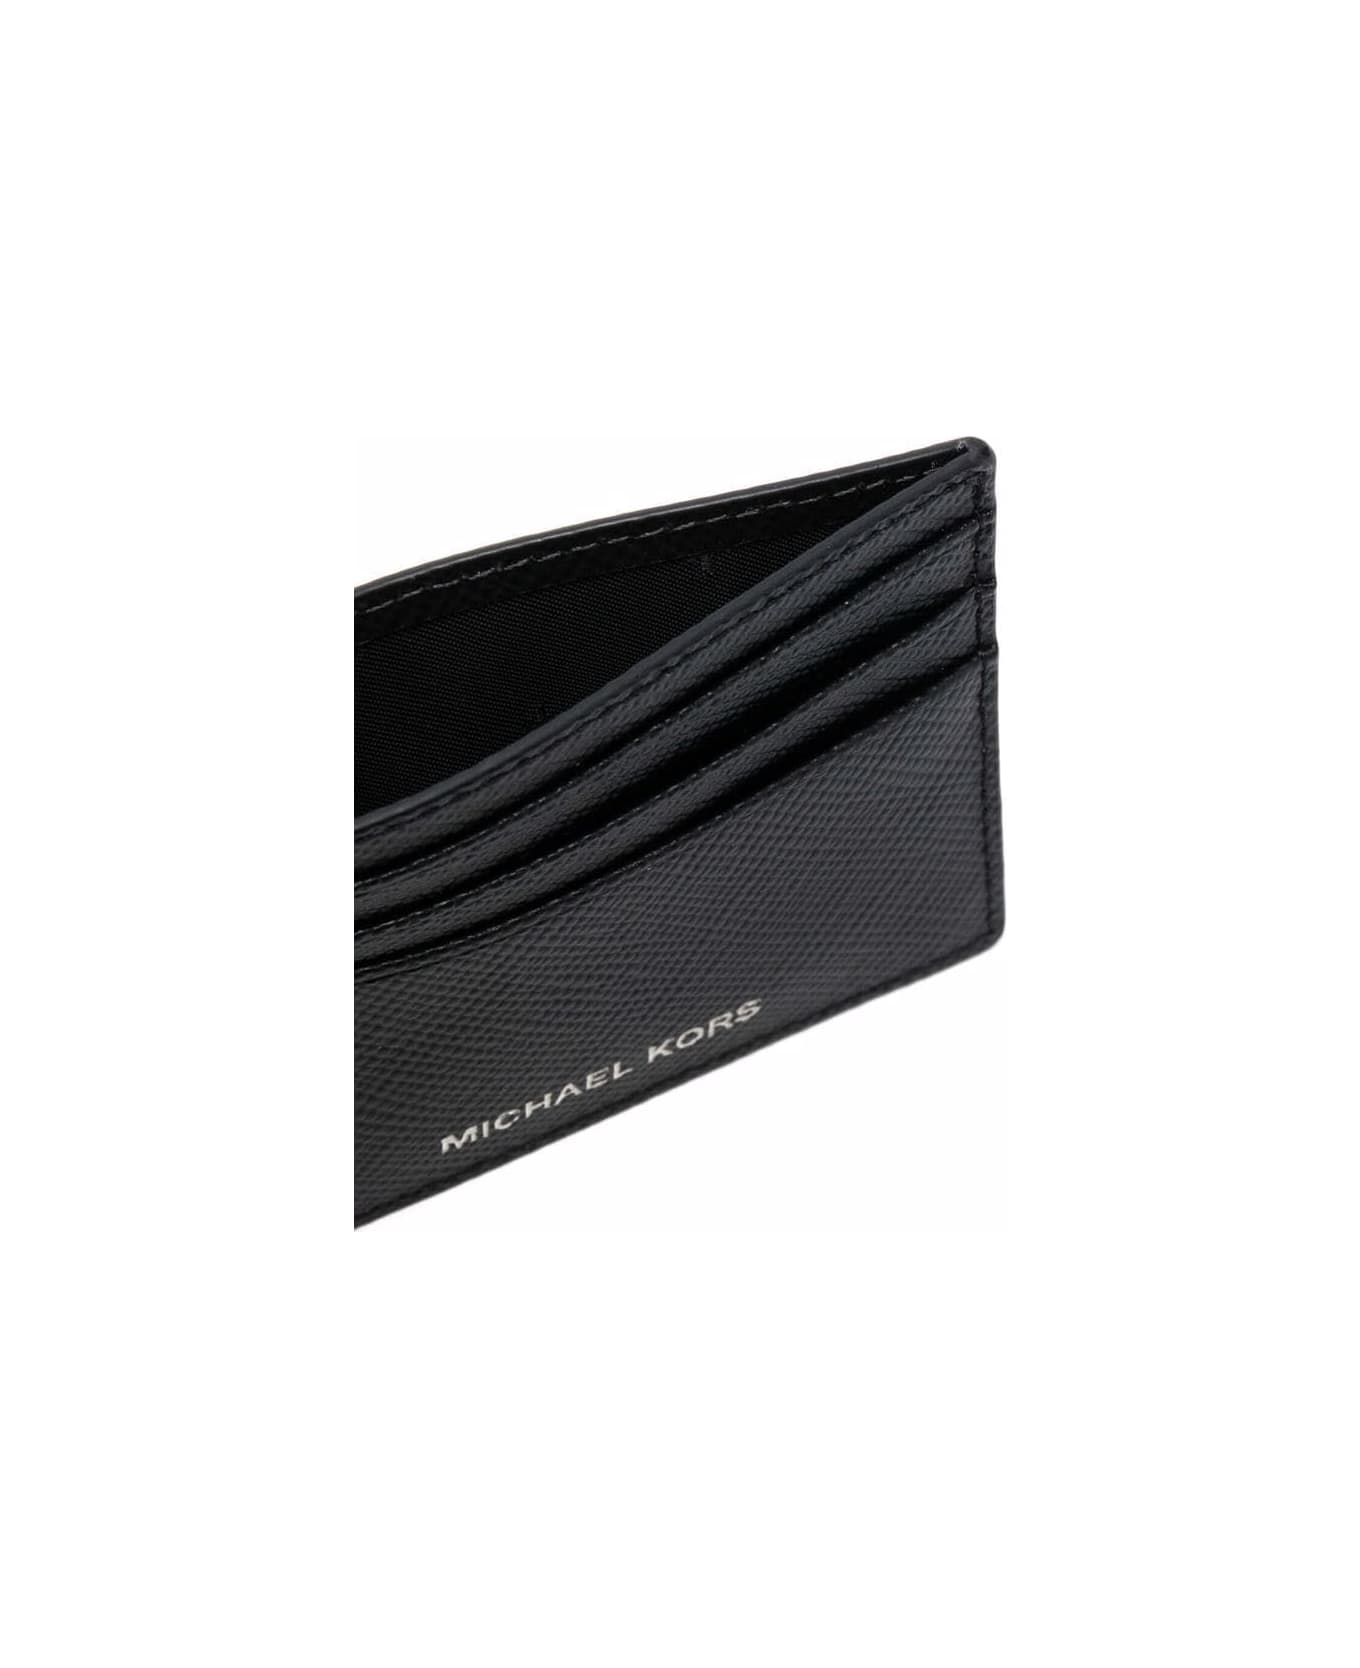 Michael Kors Harrison Card Holder - Black